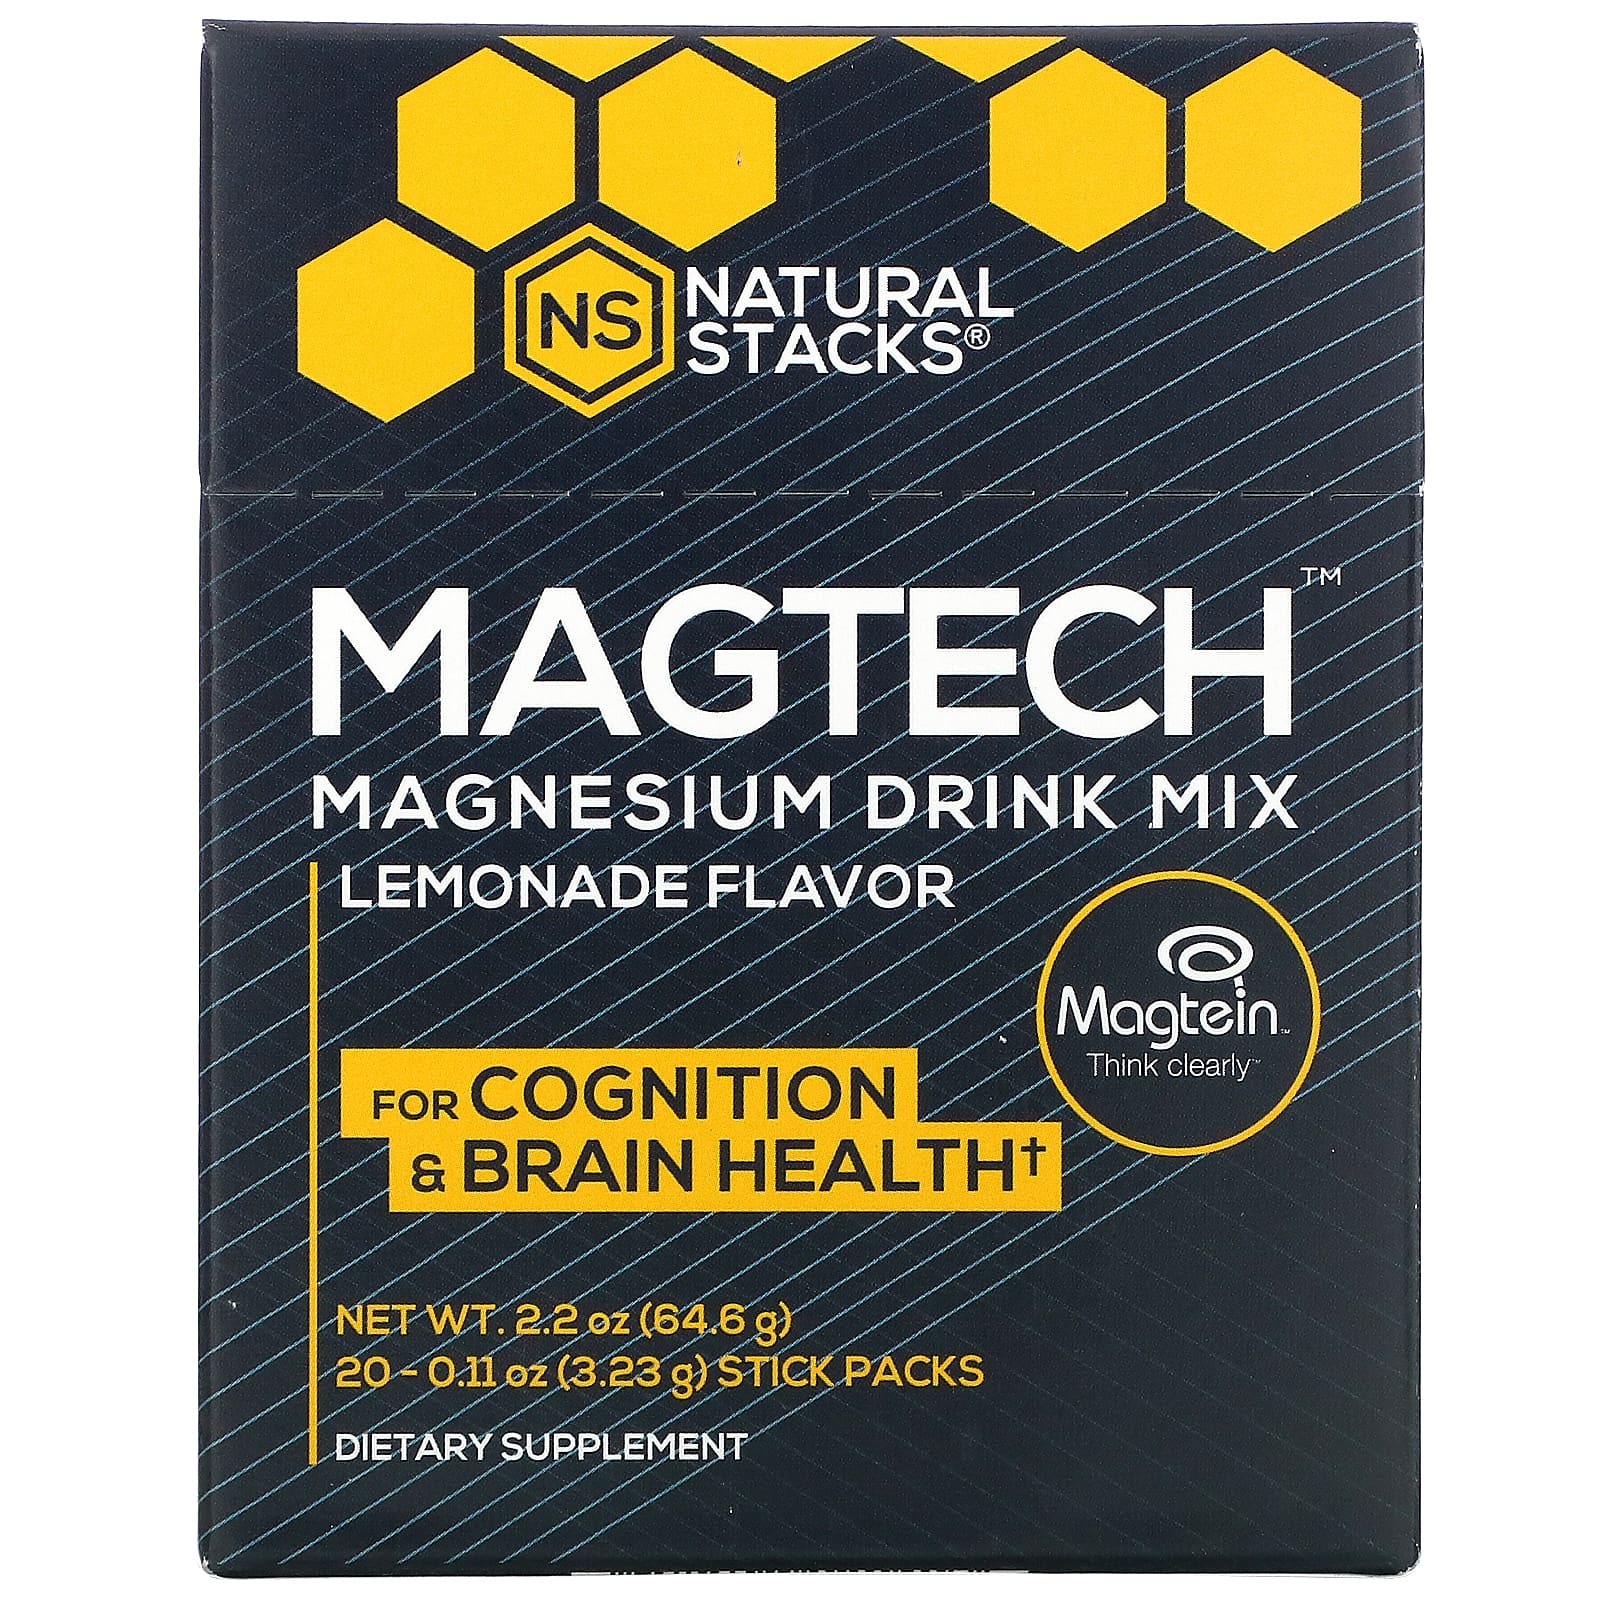 네츄럴스택스 <b>MagTech 마그네슘 드링크 믹스</b> 레모네이드스틱 팩 20 개입 3.23g